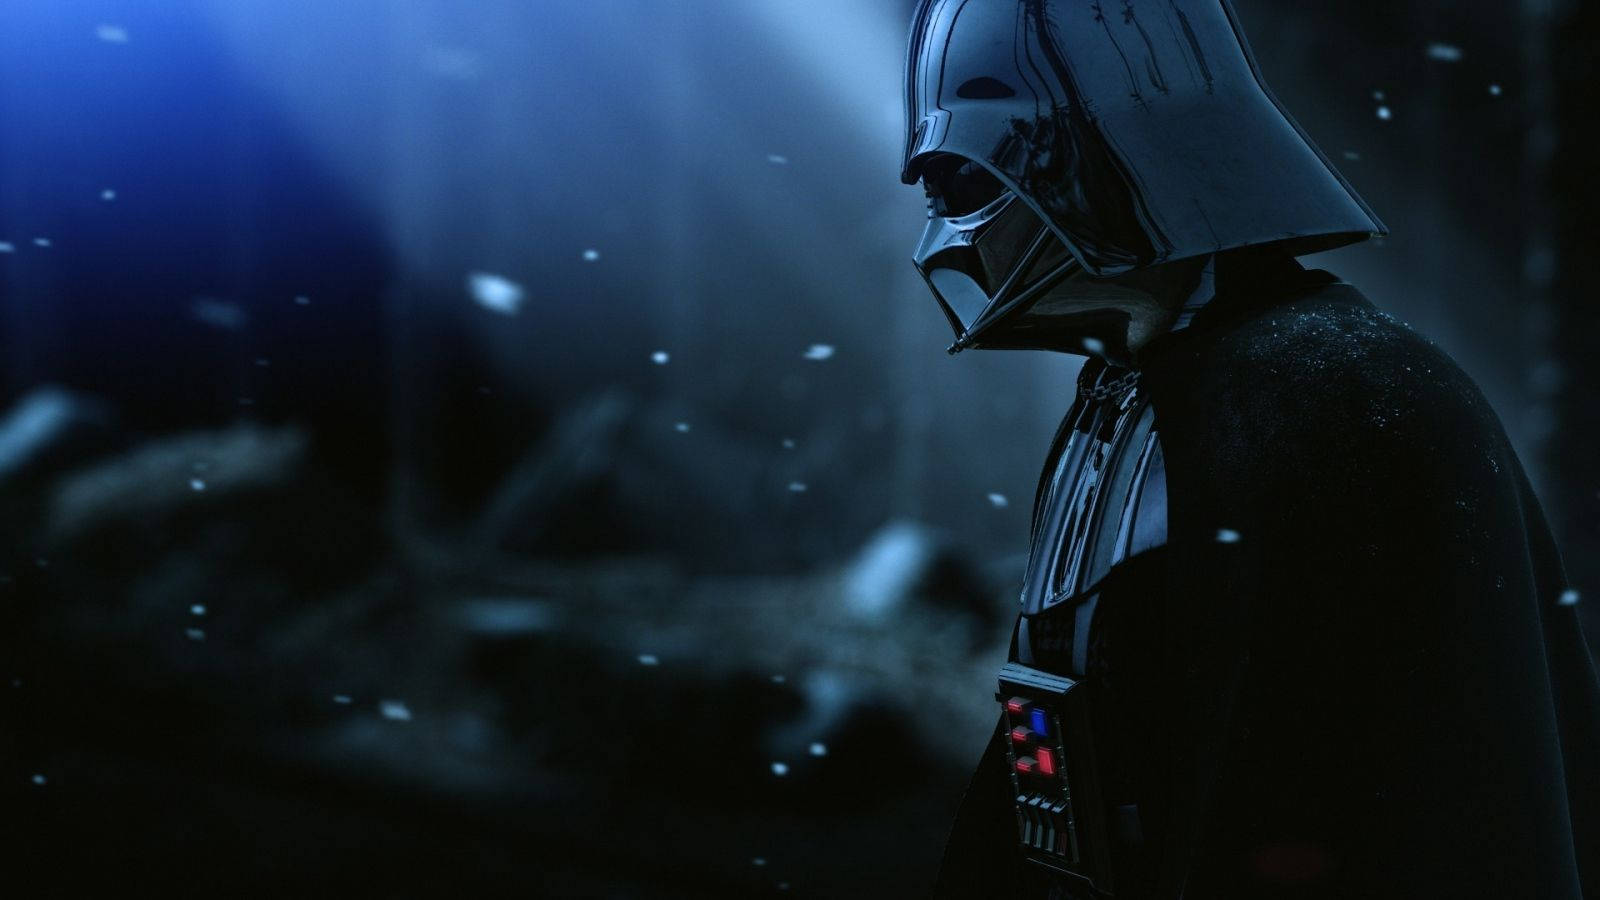 Darth Vader Villain Poster Wallpaper